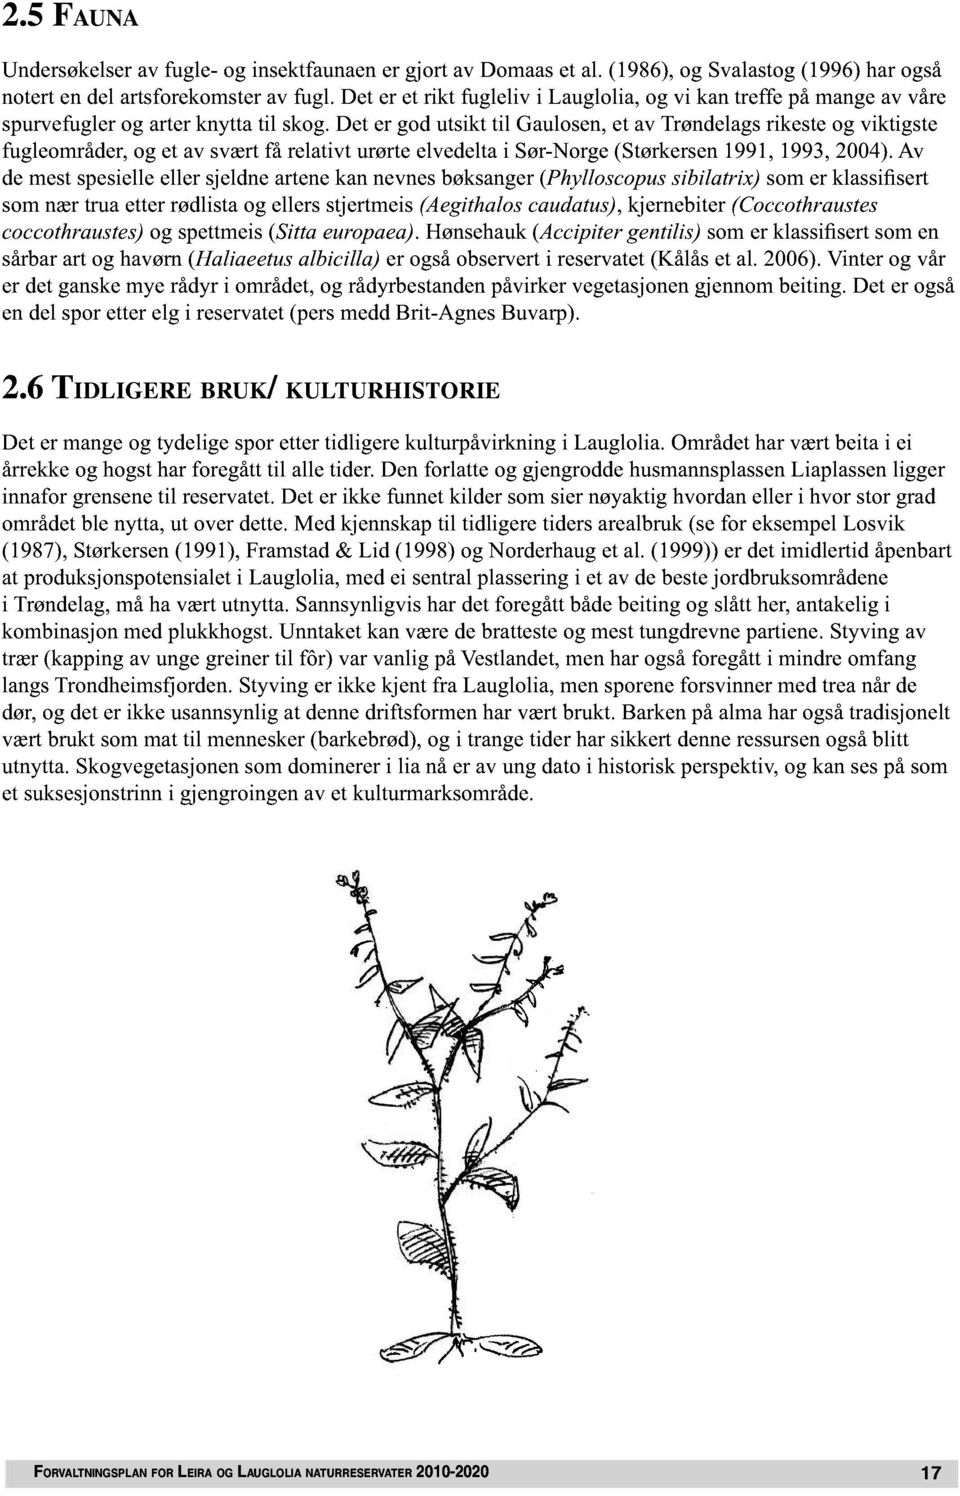 Dt r god utsikt til Gaulosn, t av Trøndlags rikst og viktigst fuglområdr, og t av svært få rlativt urørt lvdlta i Sør-Norg (Størkrsn 1991, 1993, 2004).